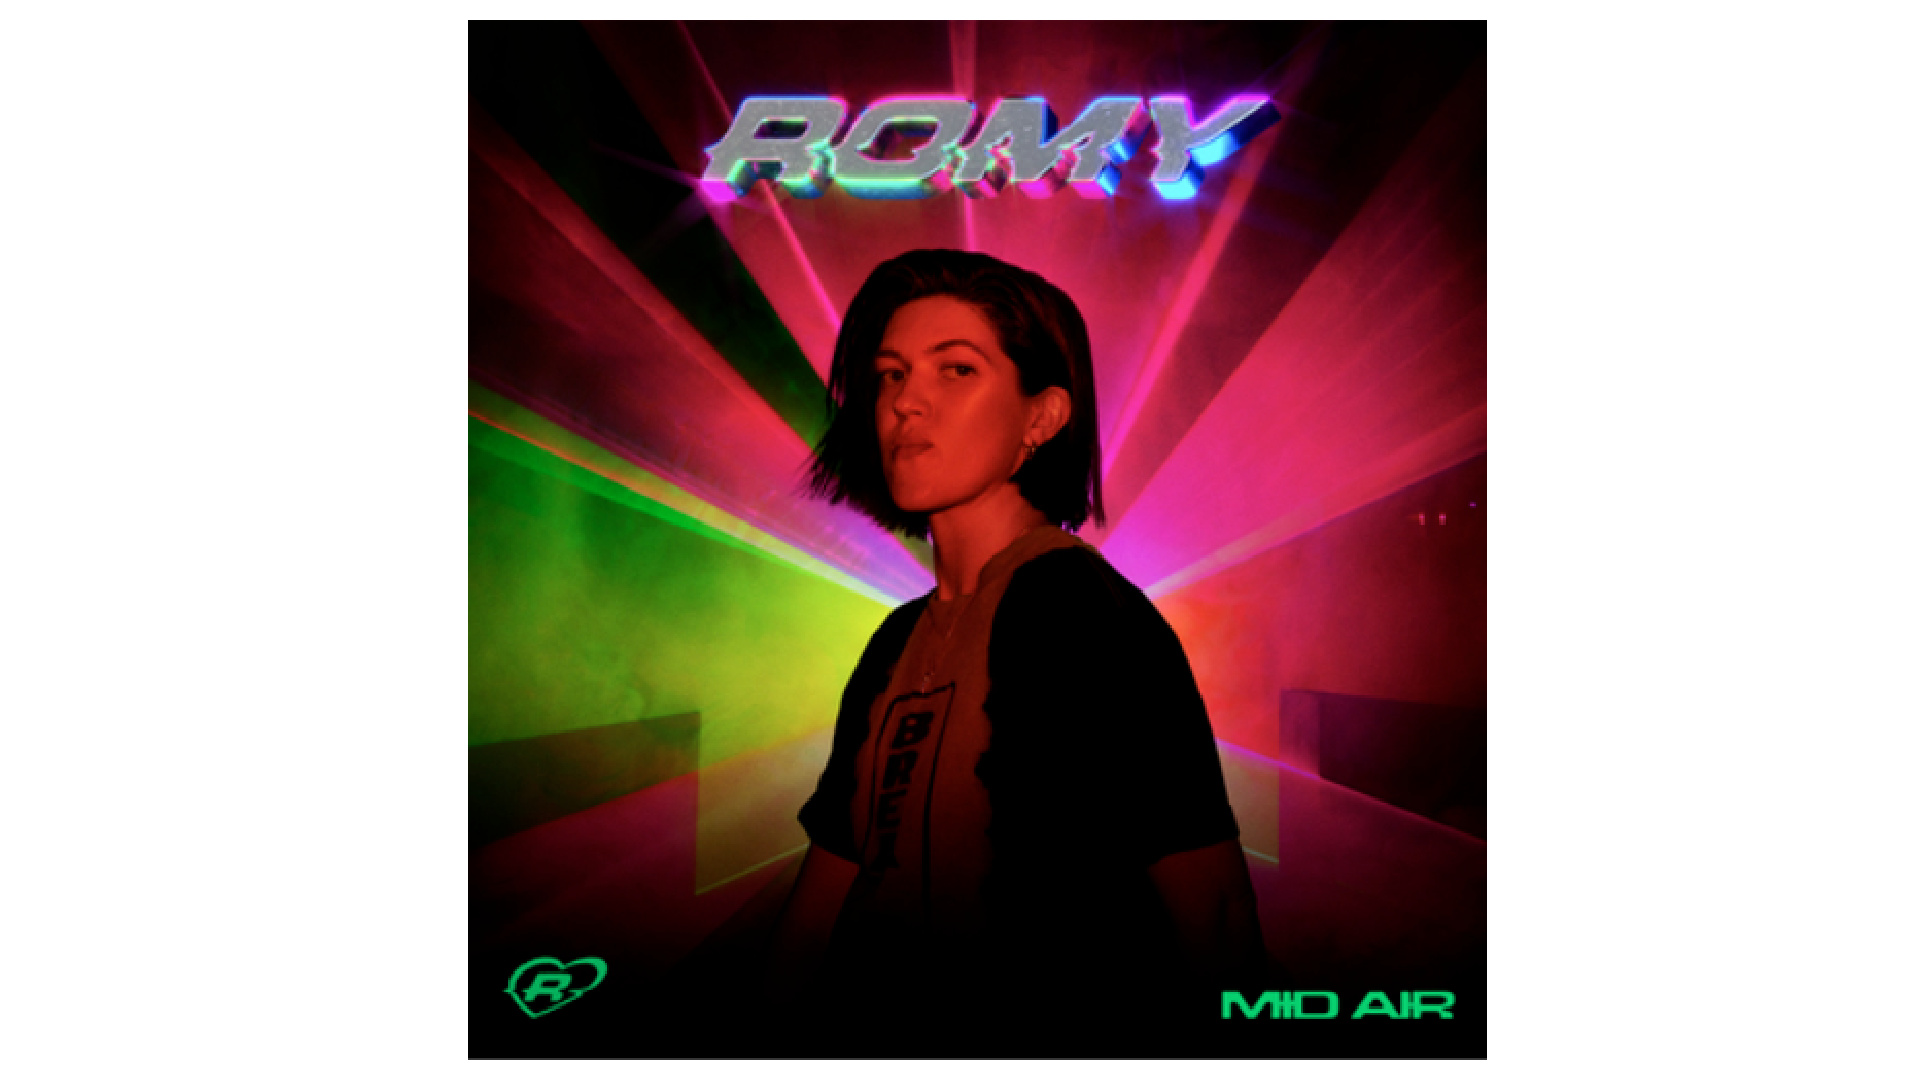 Romy - 'Mid Air'